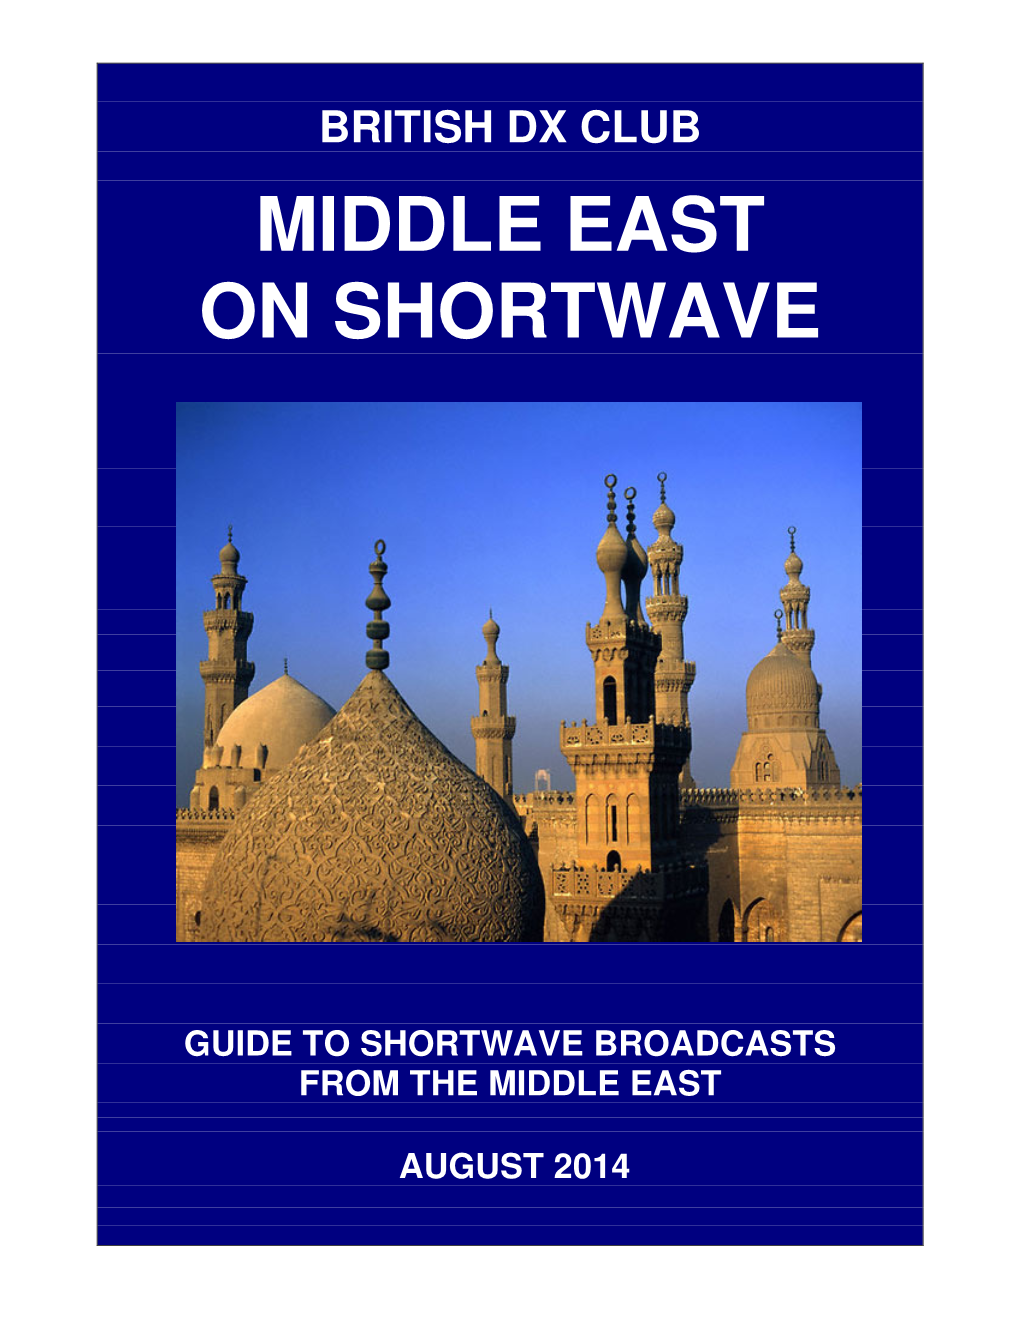 Middle East on Shortwave